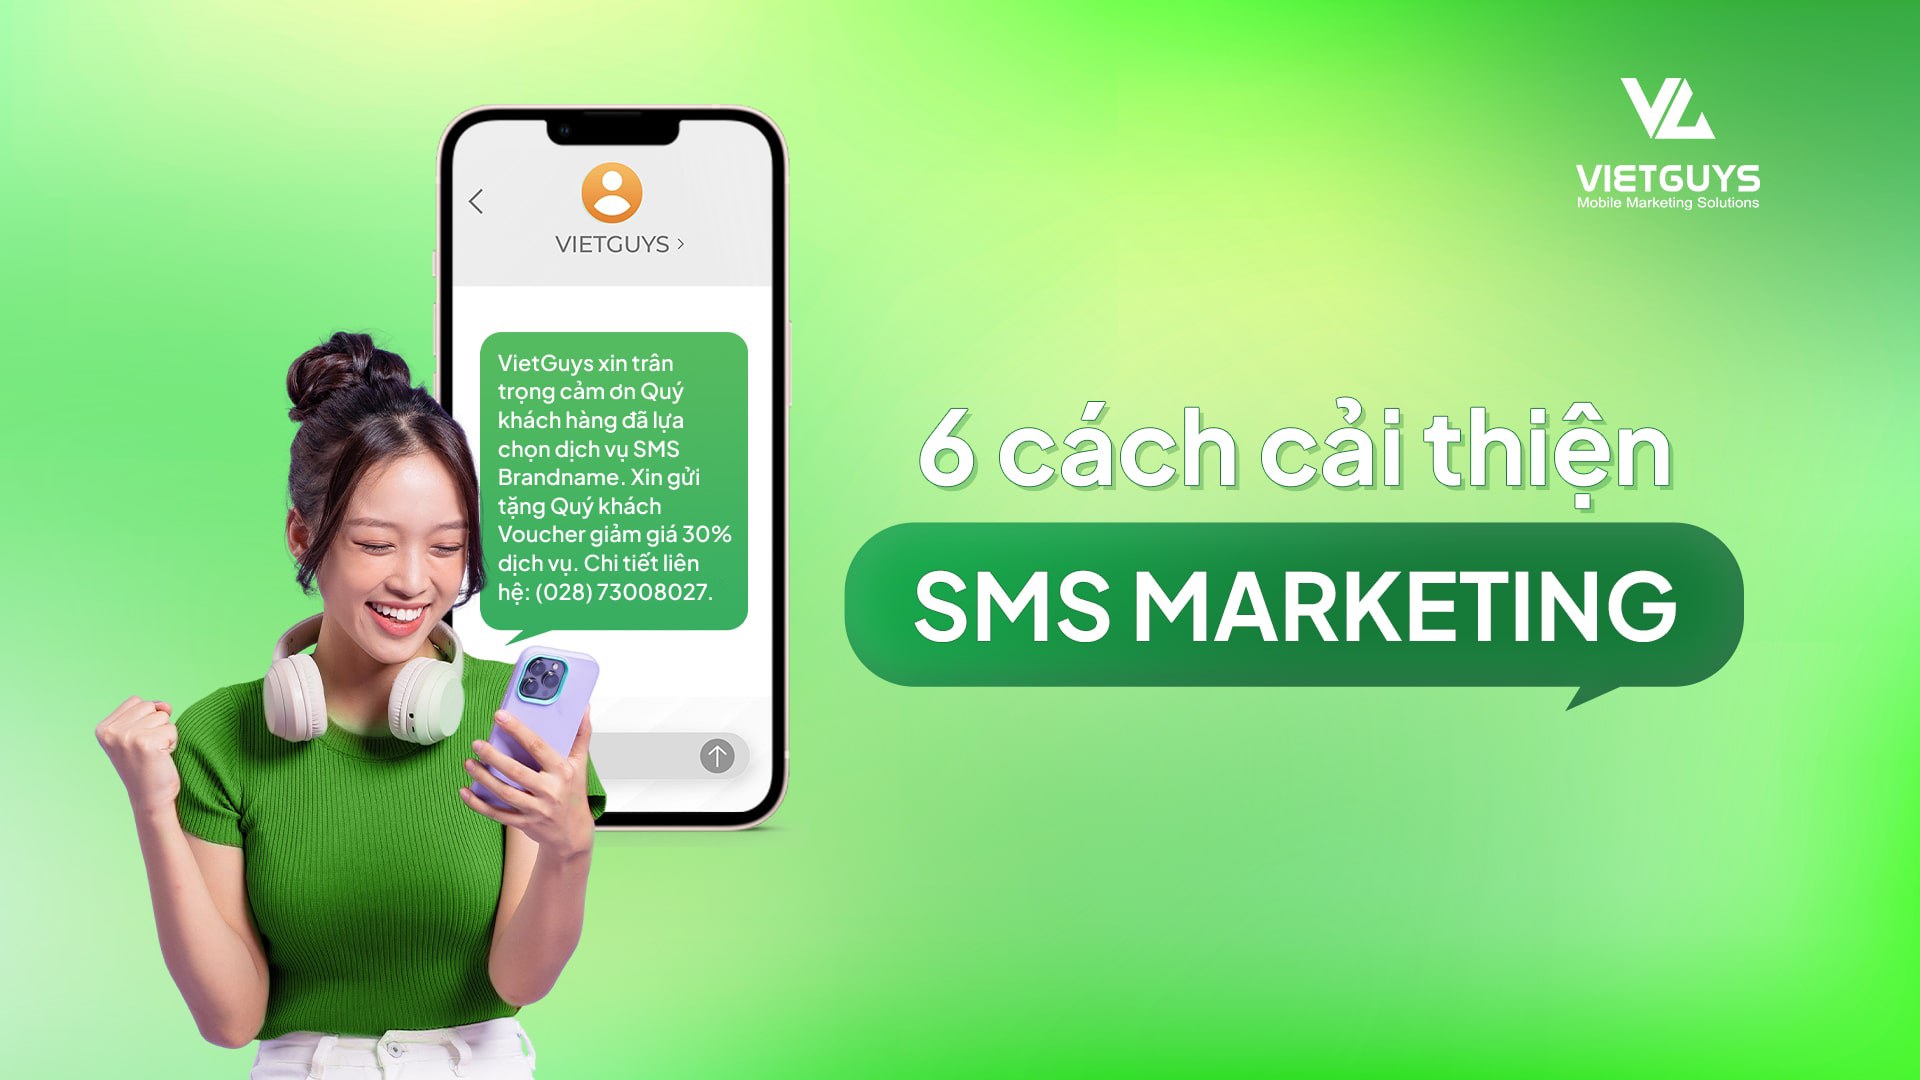 6 cách cải thiện chiến dịch SMS Marketing hiệu quả cho doanh nghiệp